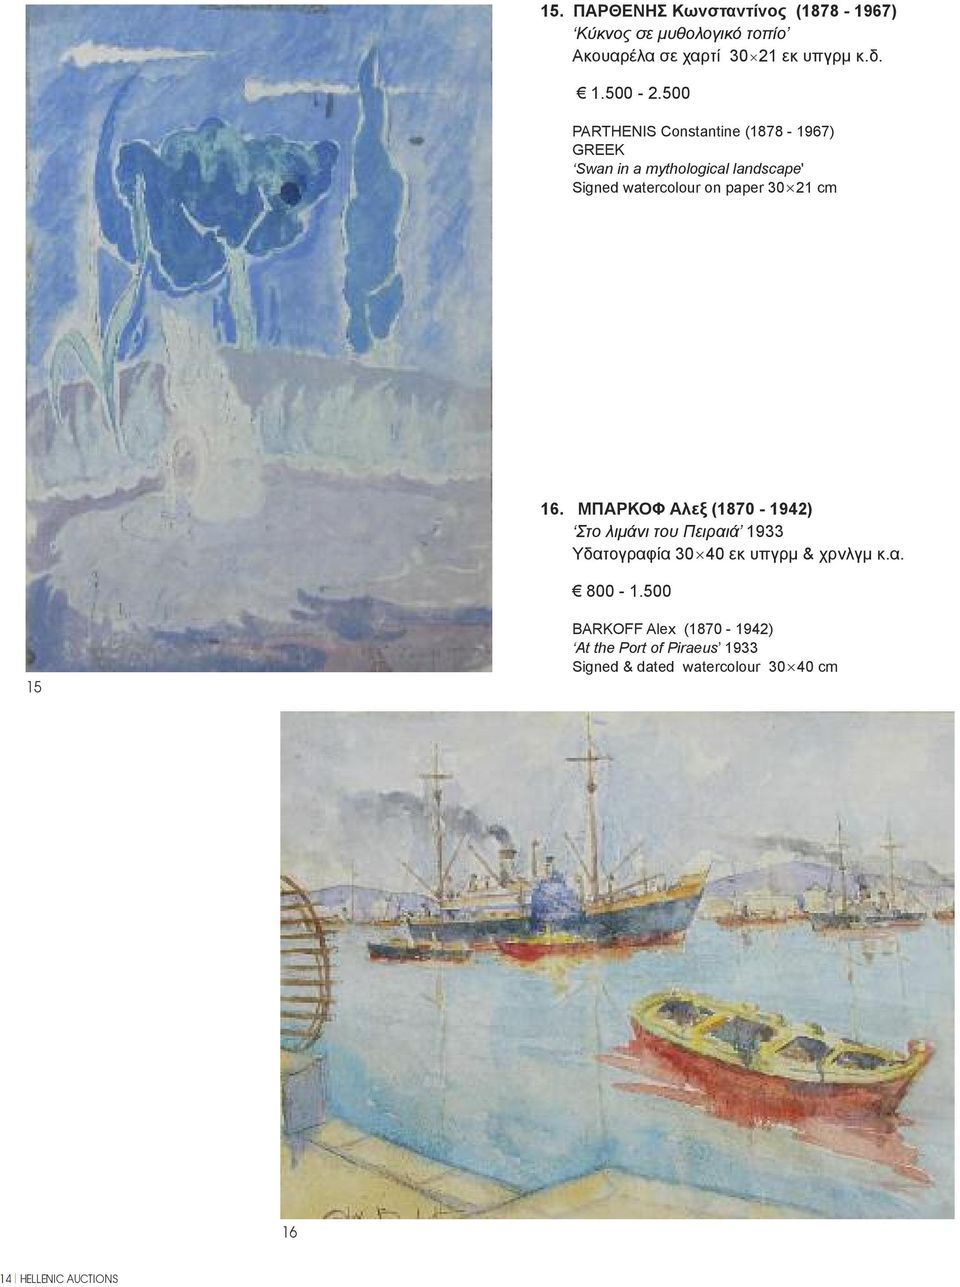 cm 16. ΜΠΑΡΚΟΦ Αλεξ (1870-1942) Στο λιμάνι του Πειραιά 1933 Υδατογραφία 30 40 εκ υπγρμ & χρνλγμ κ.α. 800-1.